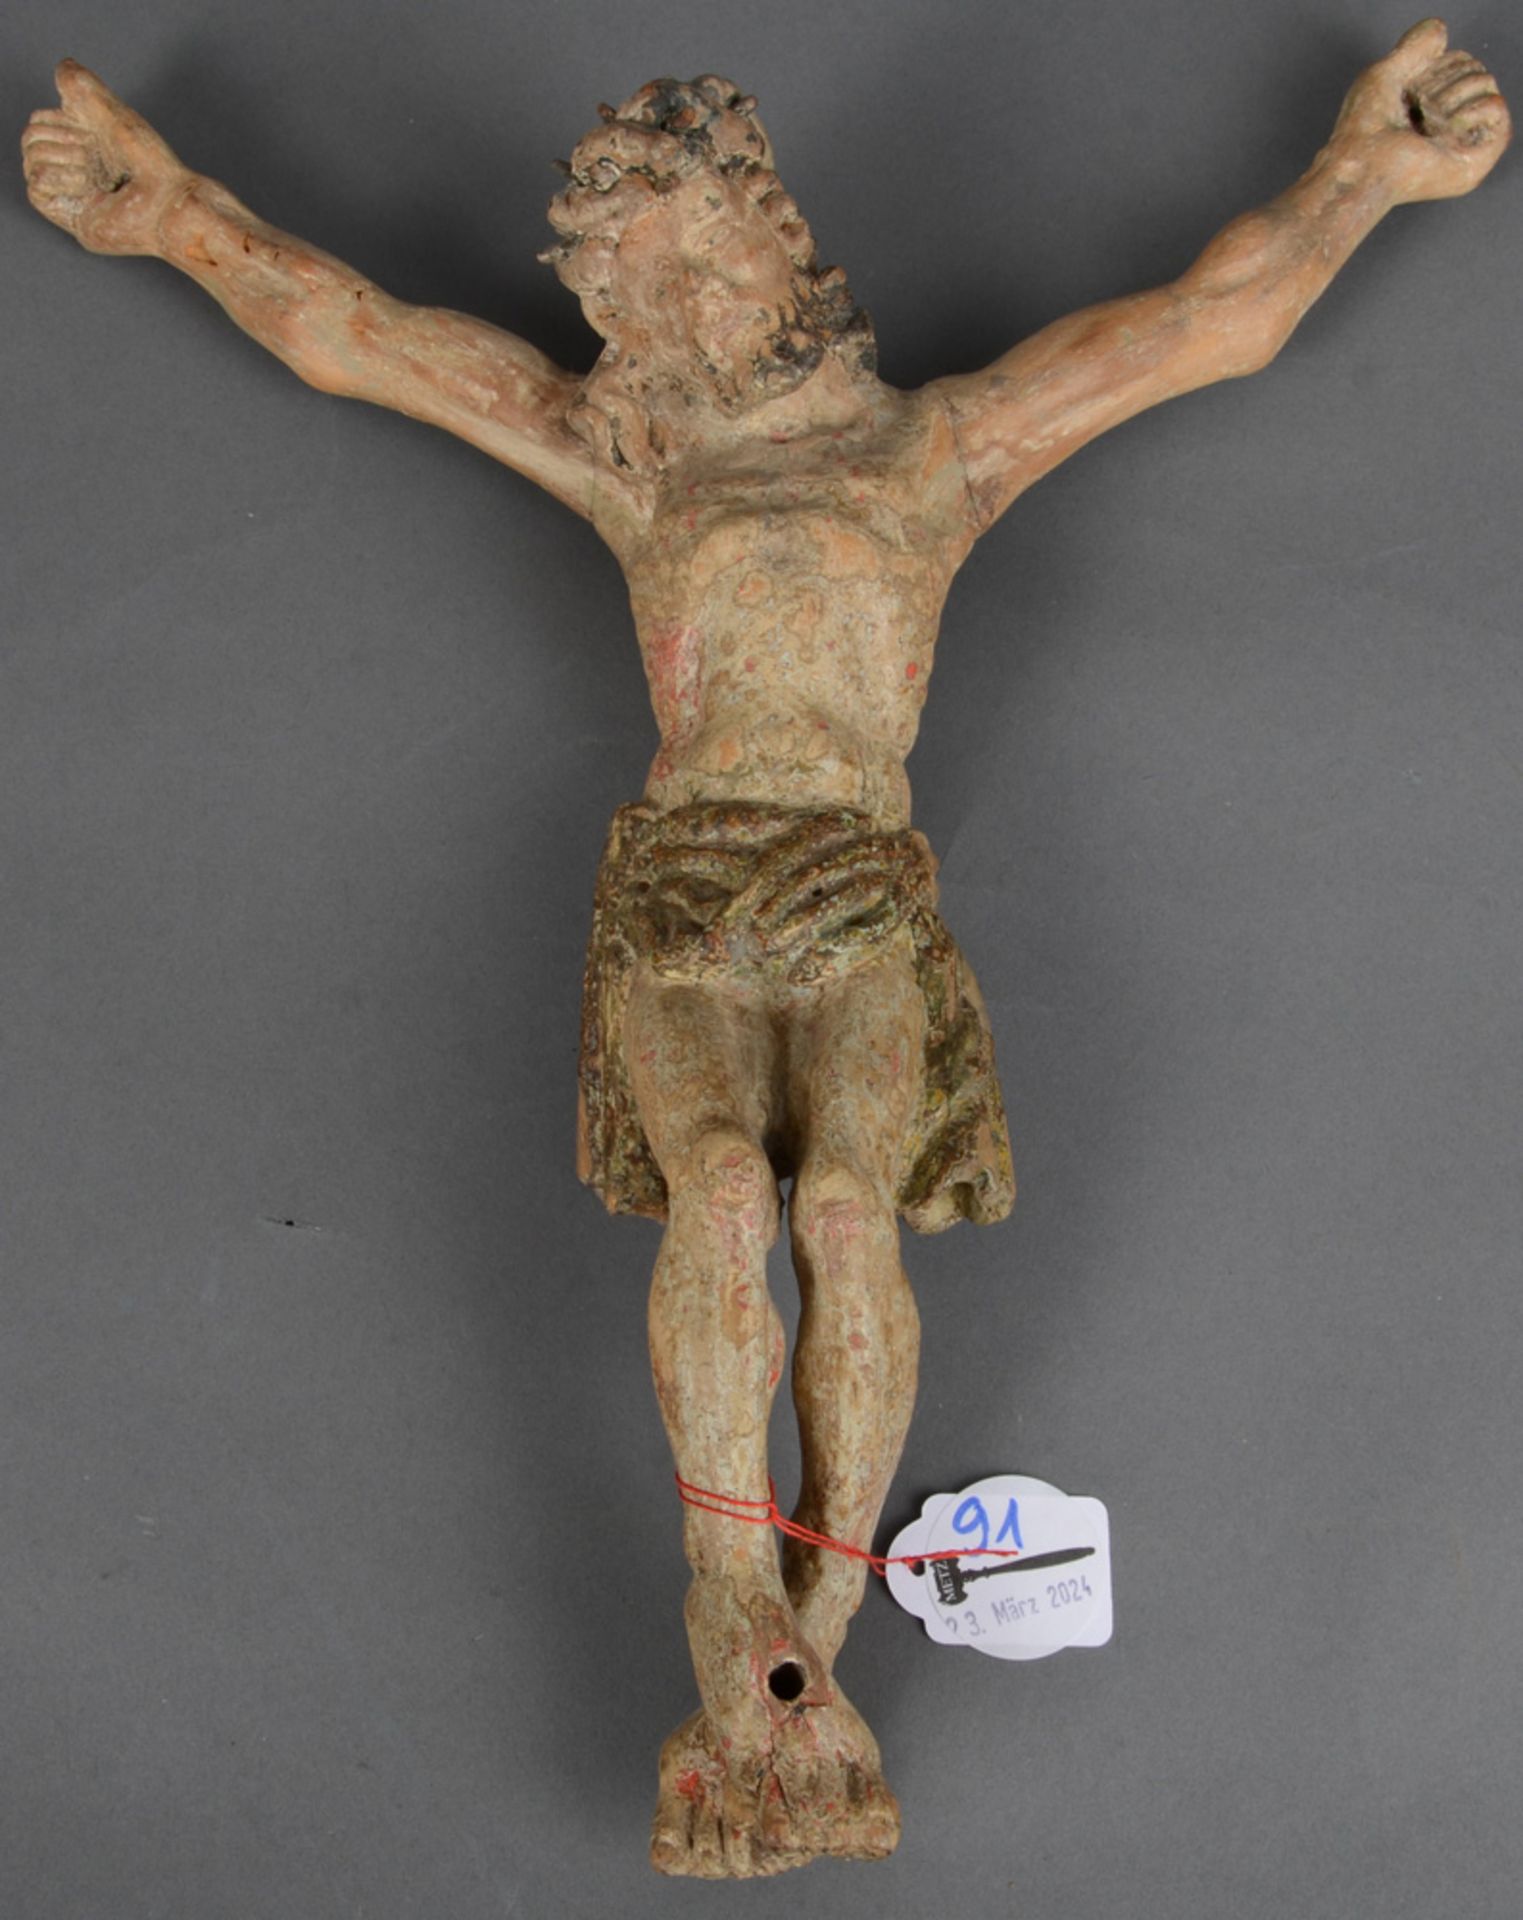 Kruzifixus. Süddeutsch 18. Jh. Massivholz, geschnitzt, auf Kreidegrund gefasst, 39 x 32 cm. (Fassung